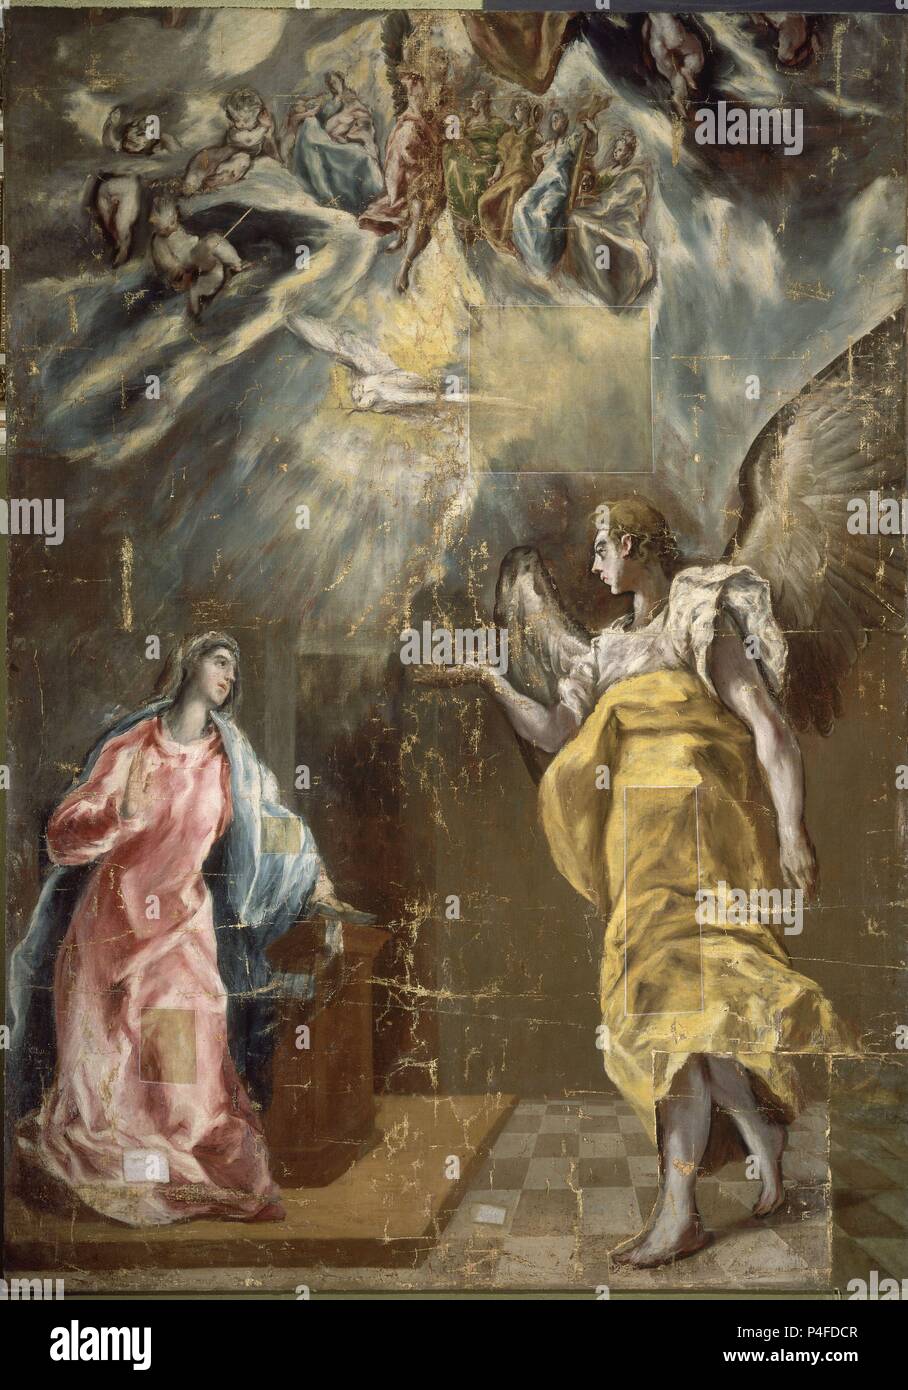 The Annunciation - 1614 - oil on canvas - 294x209 cm - Spanish Mannerism. Author: El Greco (1541-1614). Location: FUNDACION SANTANDER CENTRAL HISPANO, MADRID, SPAIN. Also known as: ANUNCIACION; LA ANUNCIACION. Stock Photo